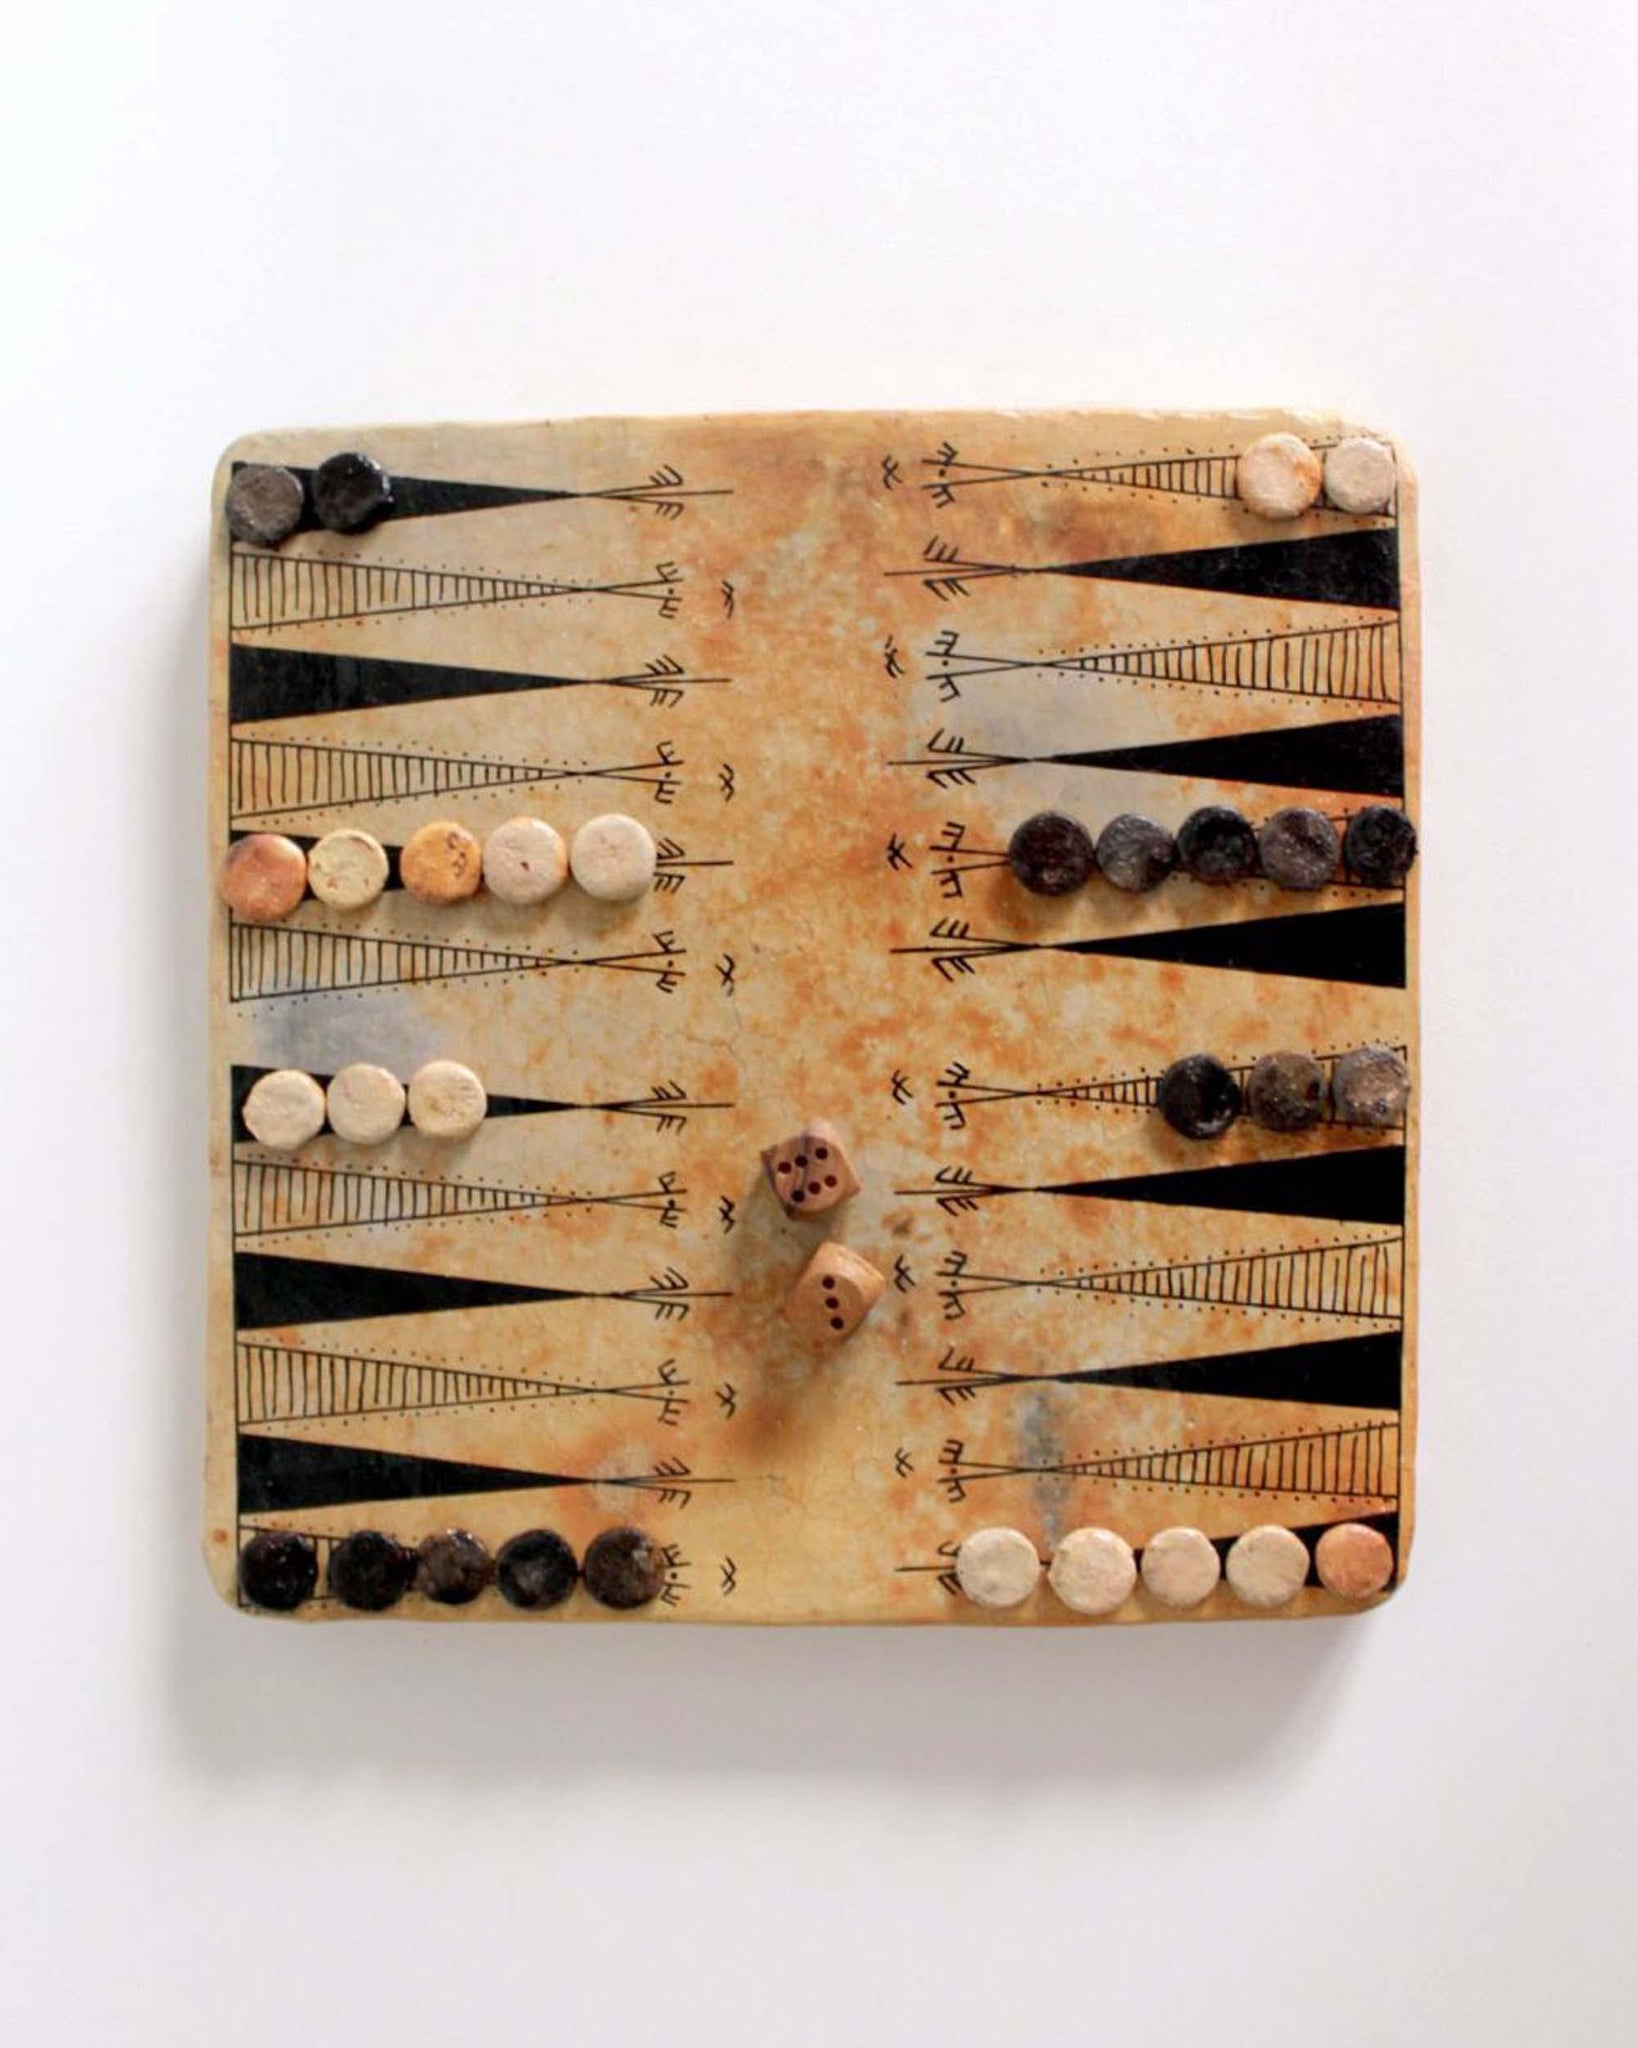 Chich-bich Ceramic Backgammon Board - Folkways